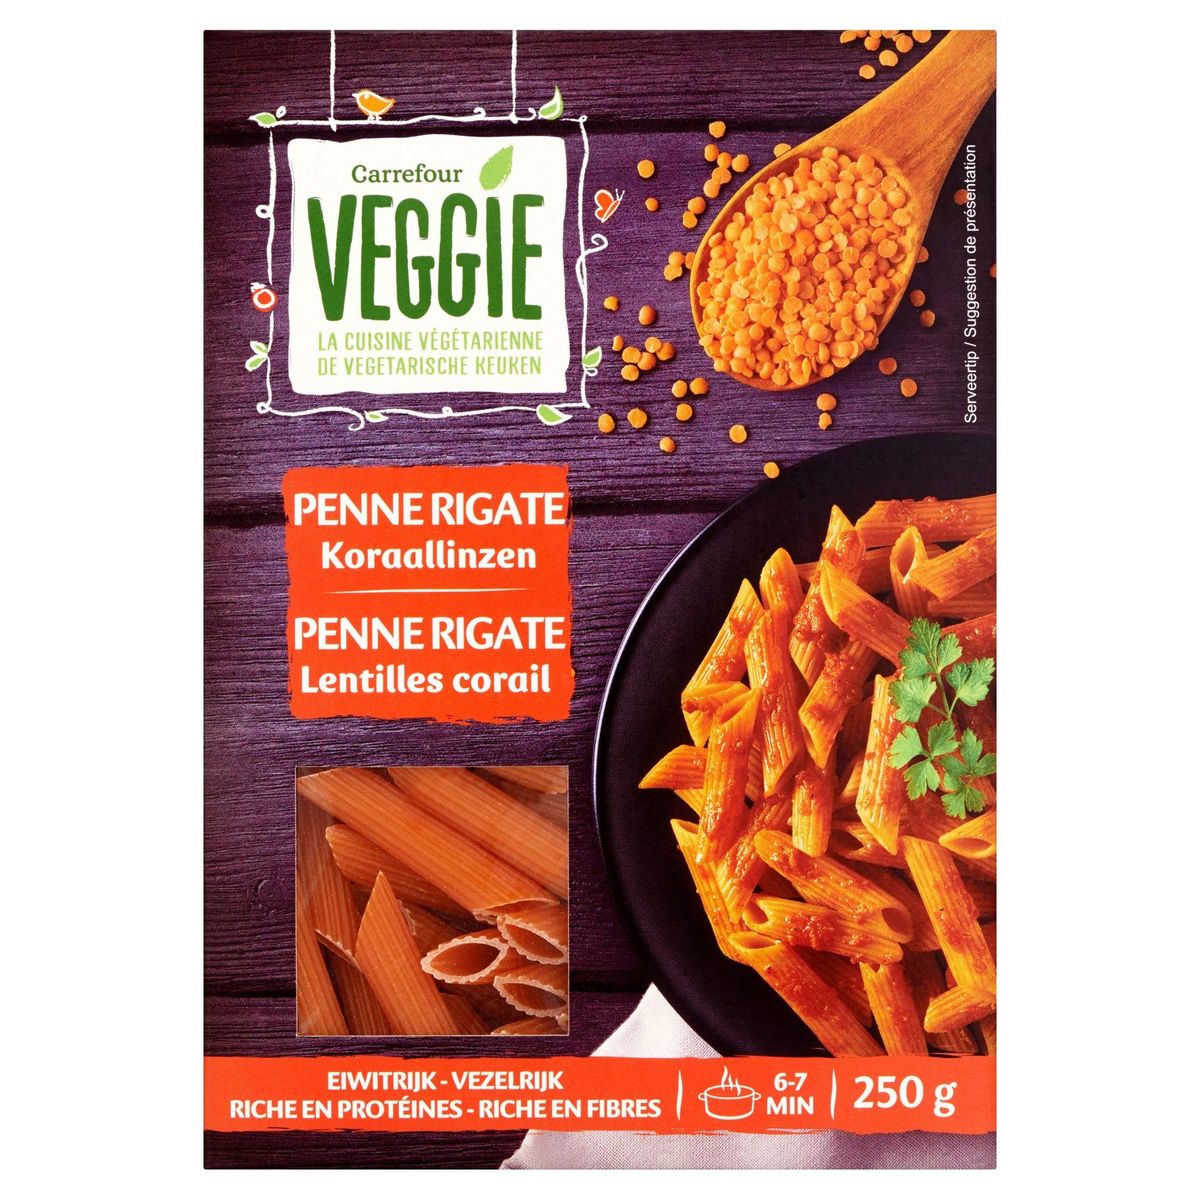 Carrefour Veggie Penne Rigate Lentilles Corail  250 g